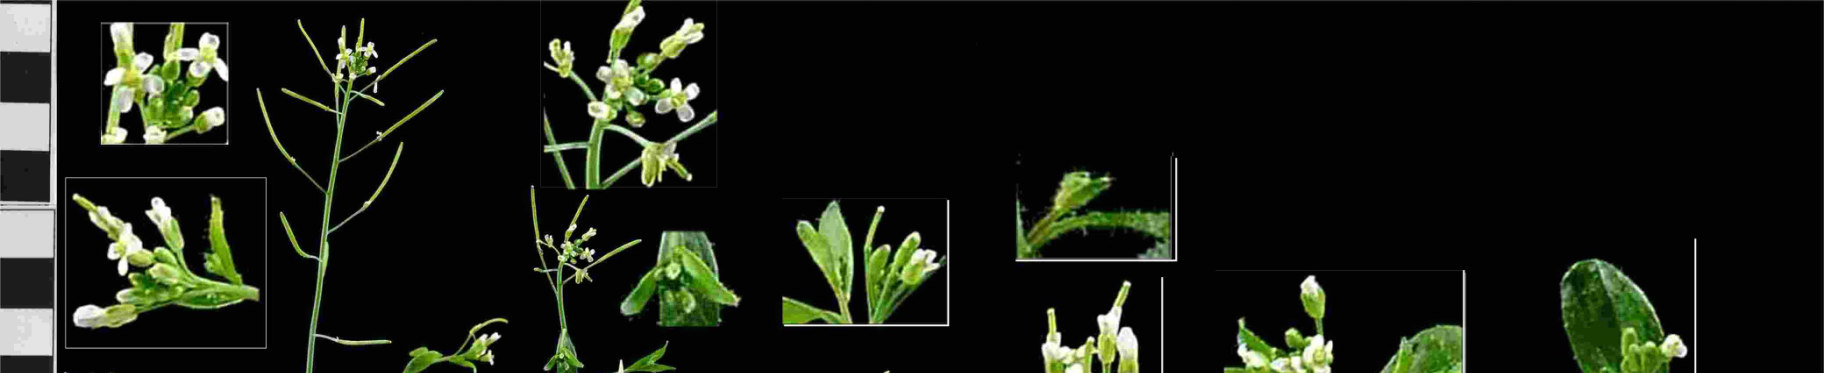 Trasformazione in planta di Arabidopsis Il punto cruciale del protocollo è lo stato di salute delle piante e il giusto stadio di crescita.